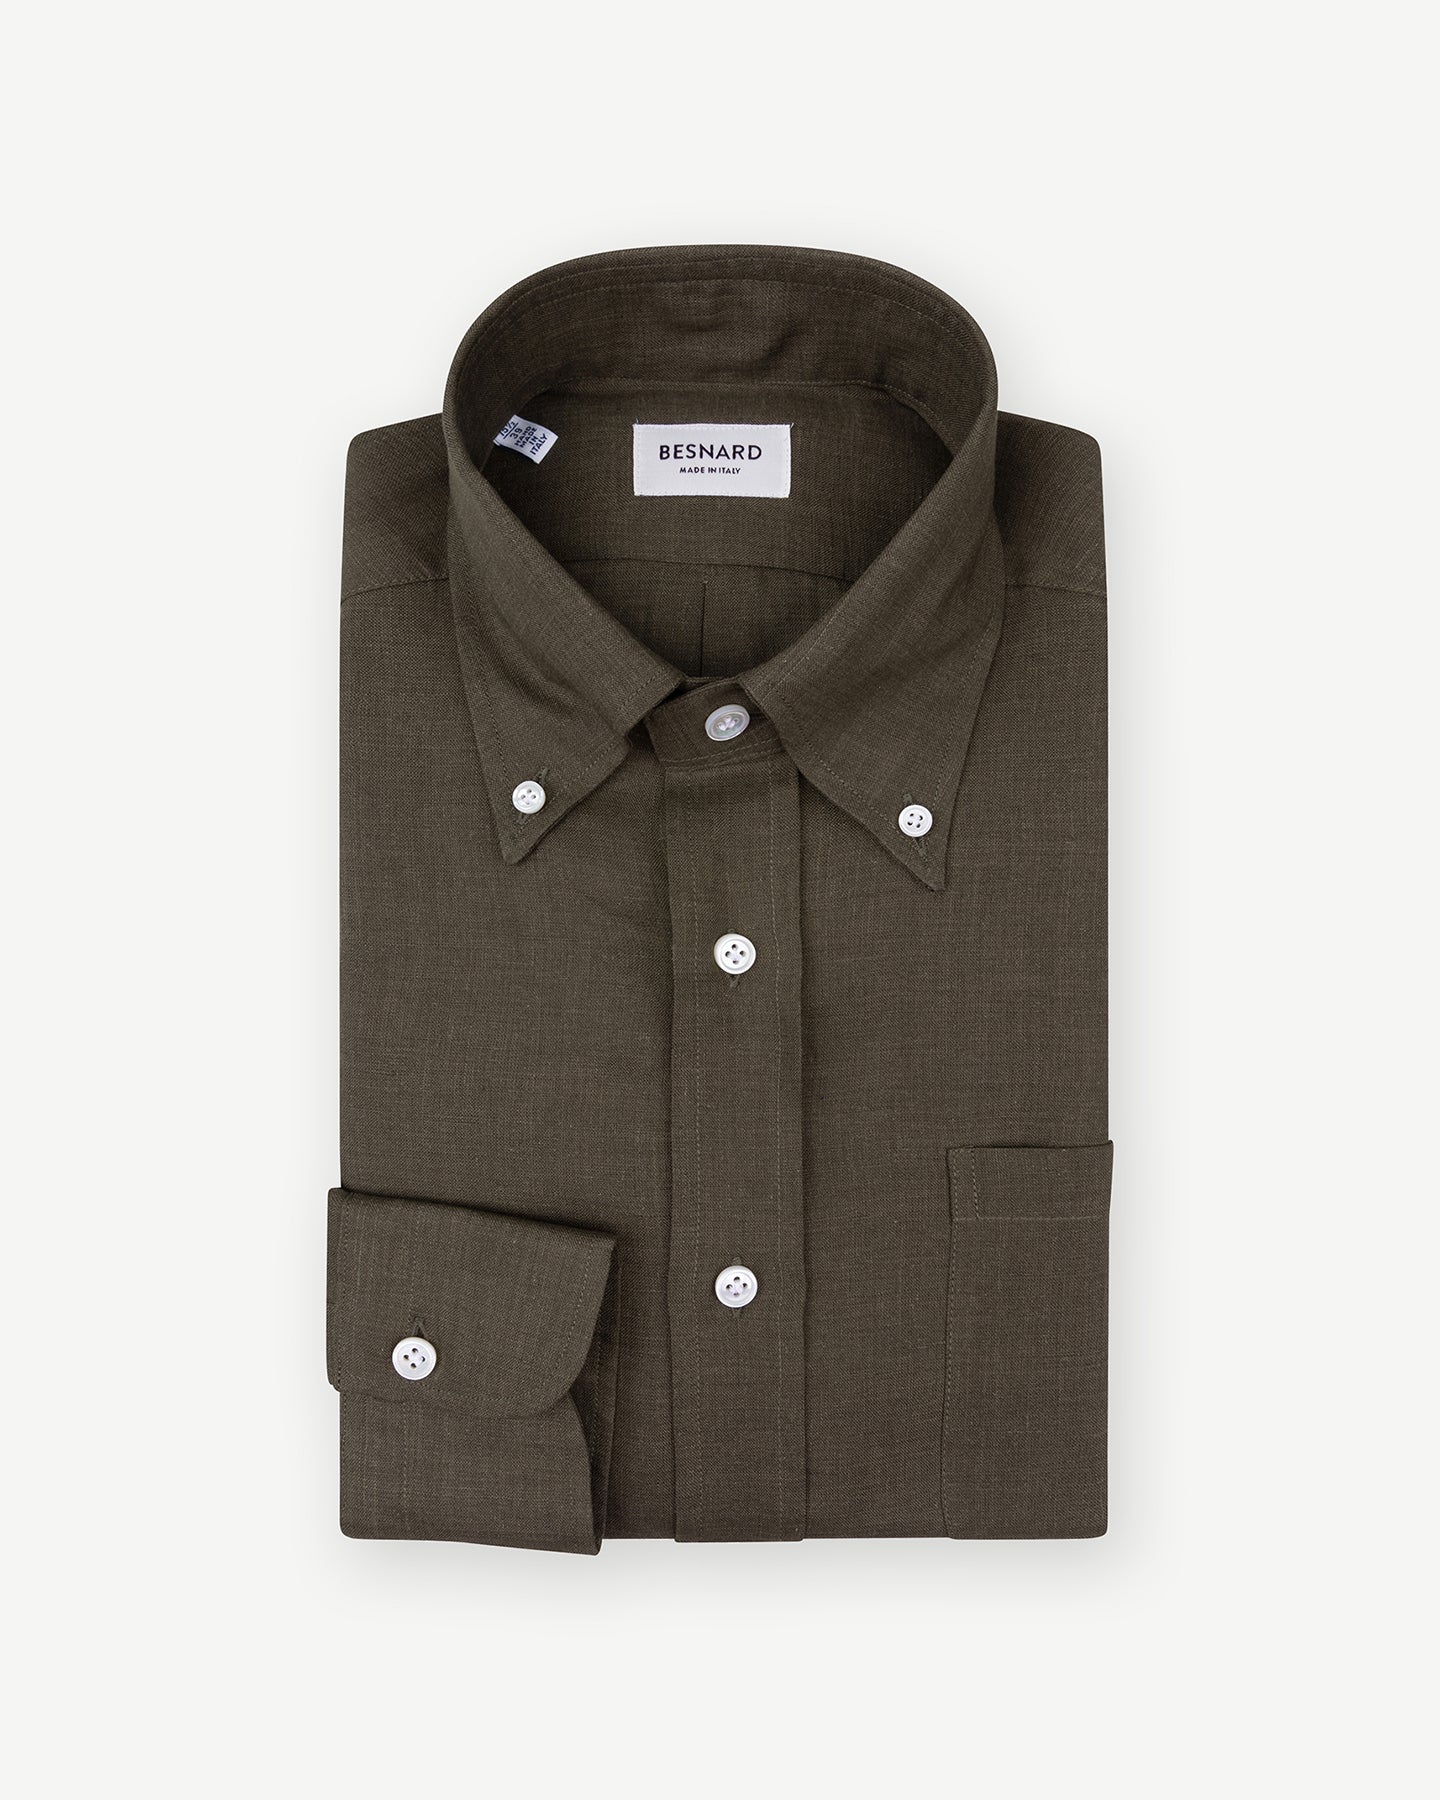 Olive green linen button down shirt